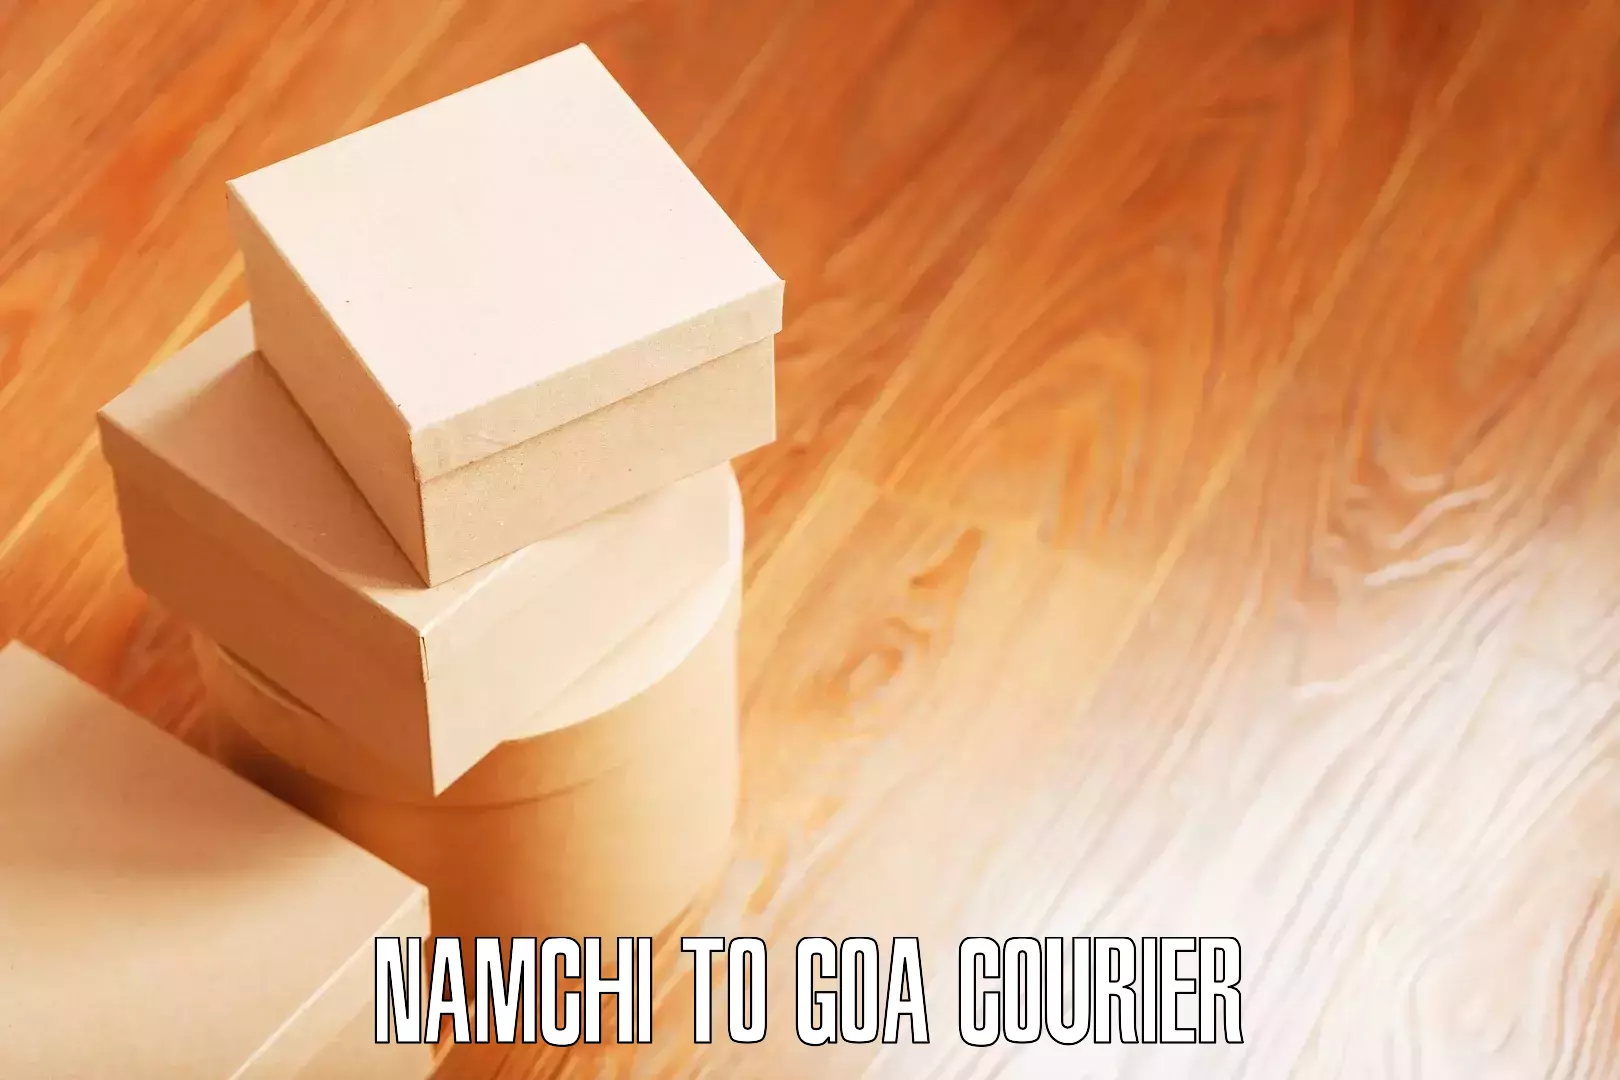 Professional moving assistance Namchi to Canacona